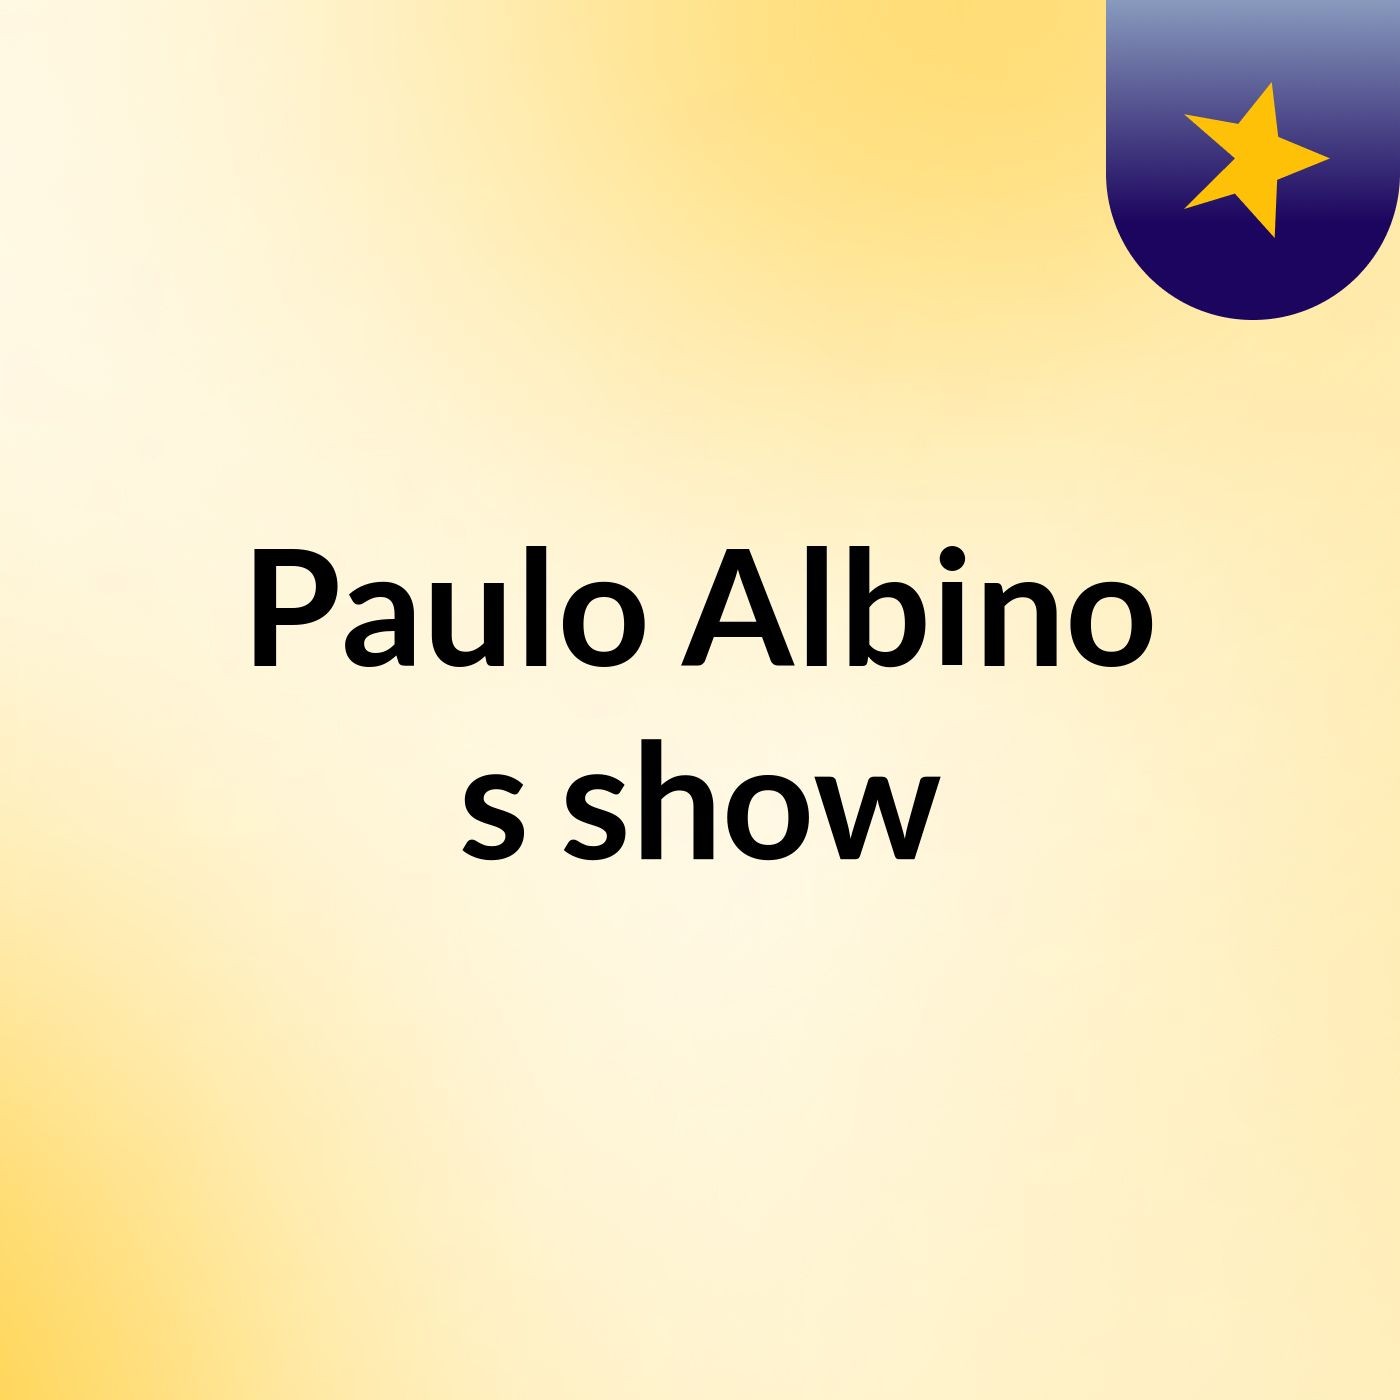 Paulo Albino's show